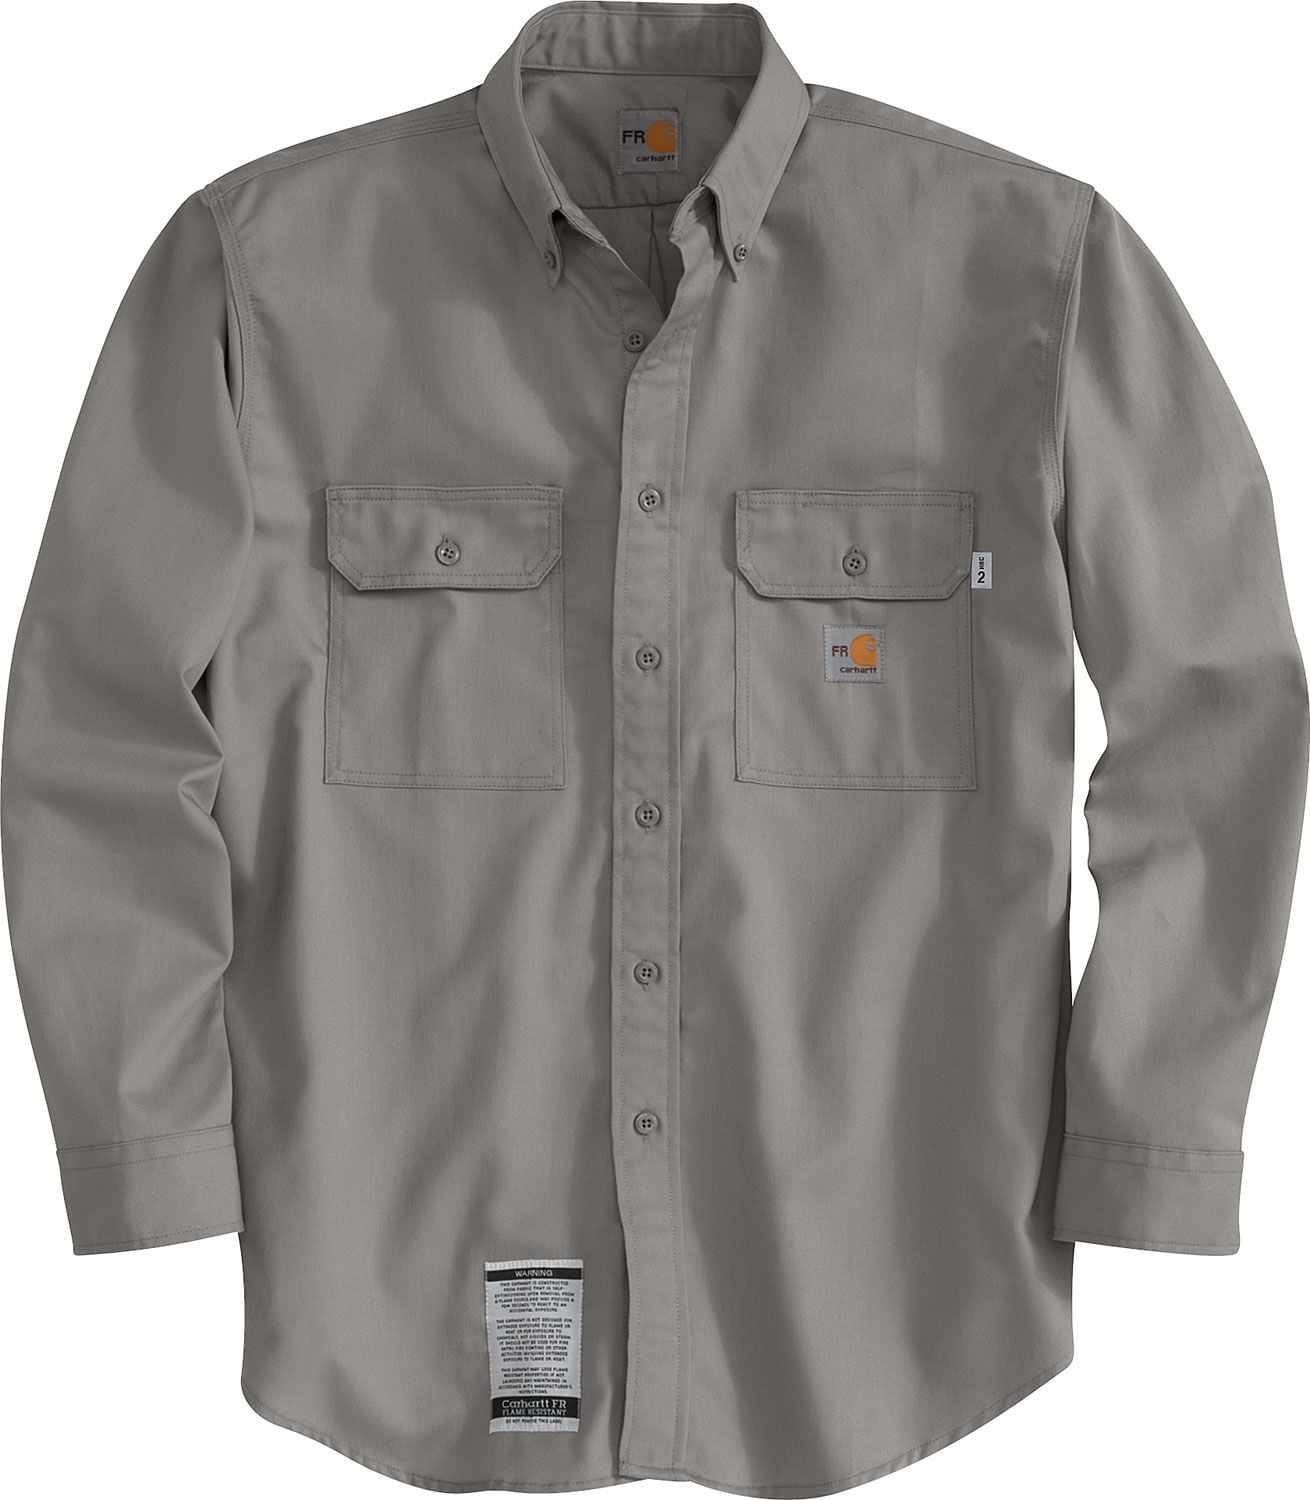 Carhartt - Carhartt Men's Flame Resistant Twill Long Sleeve Work Shirt - Walmart.com - Walmart.com